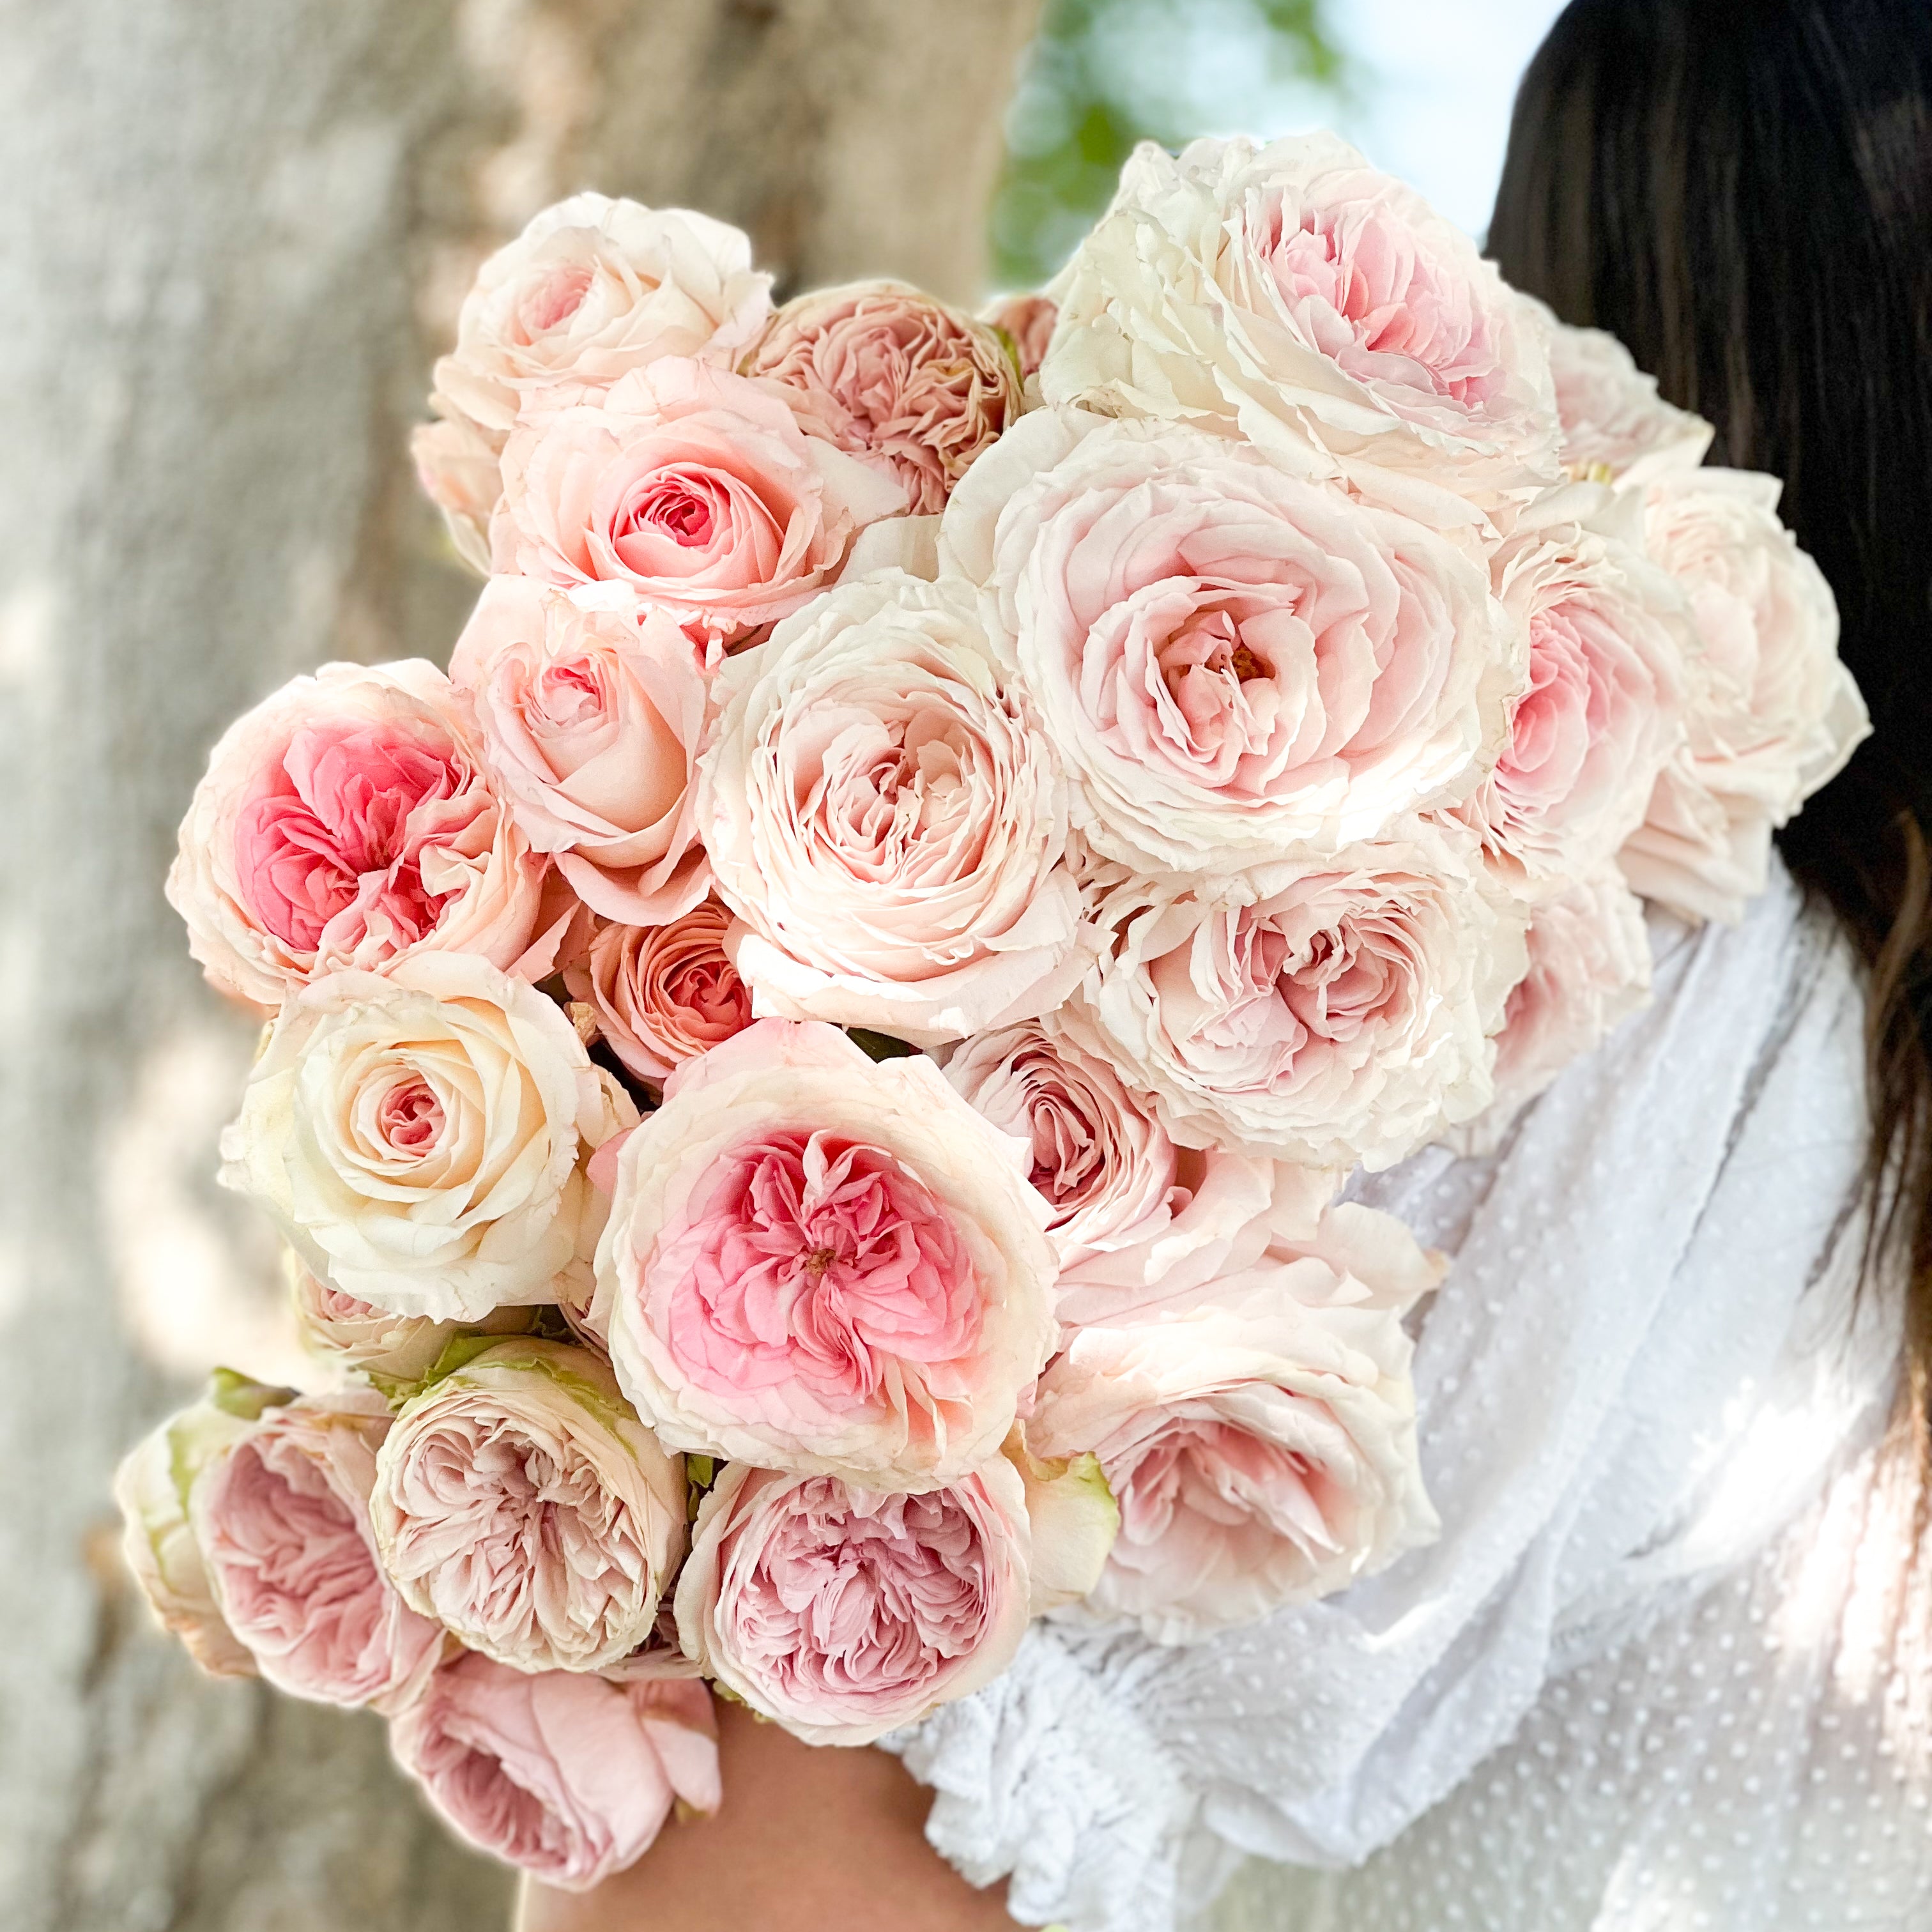 Blushing Bride - Flower & Farmer